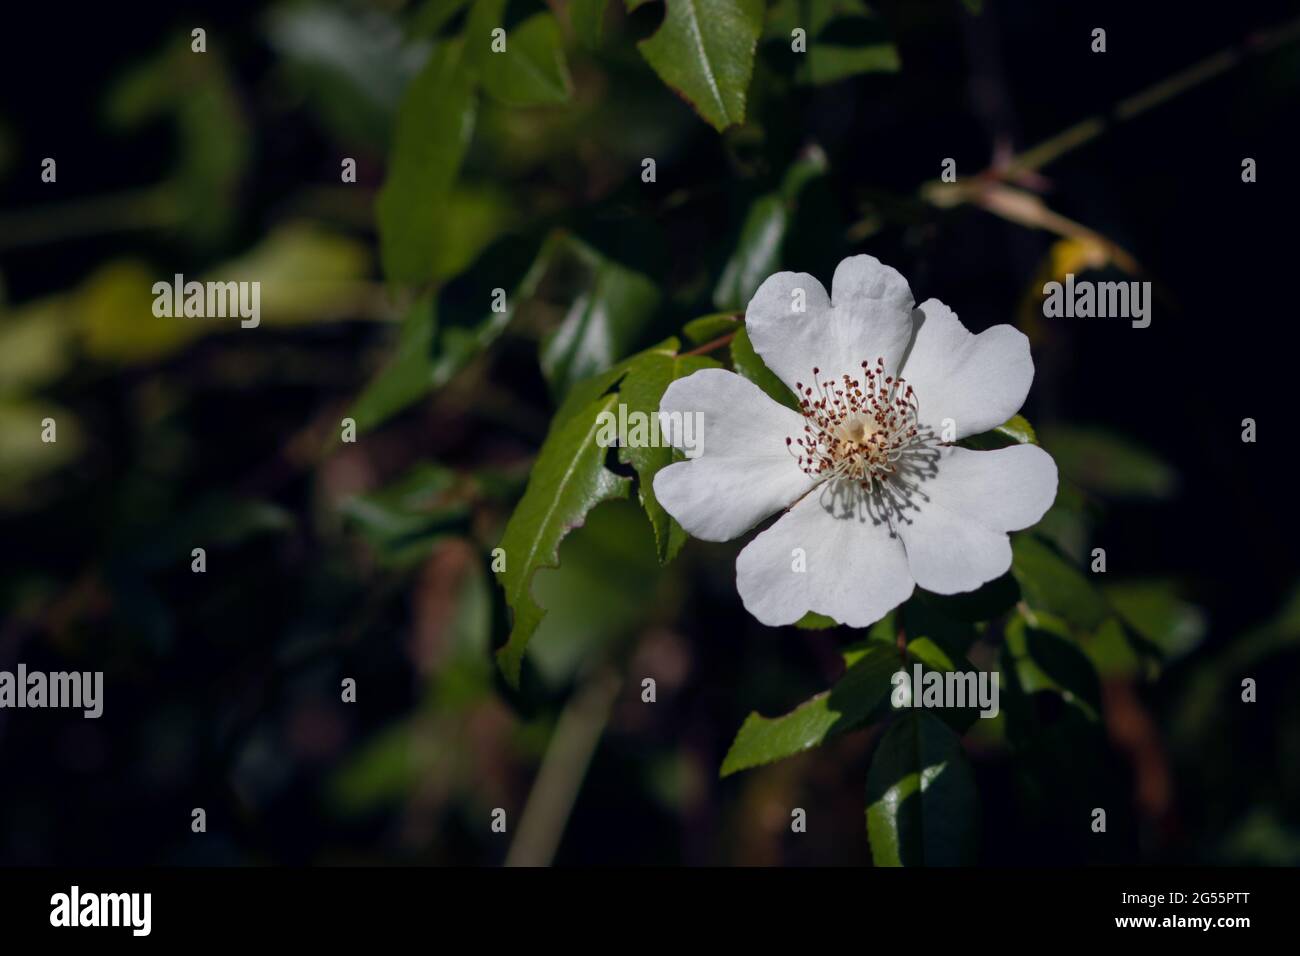 Nahaufnahme einer einzelnen Hunderosenblume oder Rosa Canina mit weißen Blütenblättern, die im Wald wachsen Stockfoto